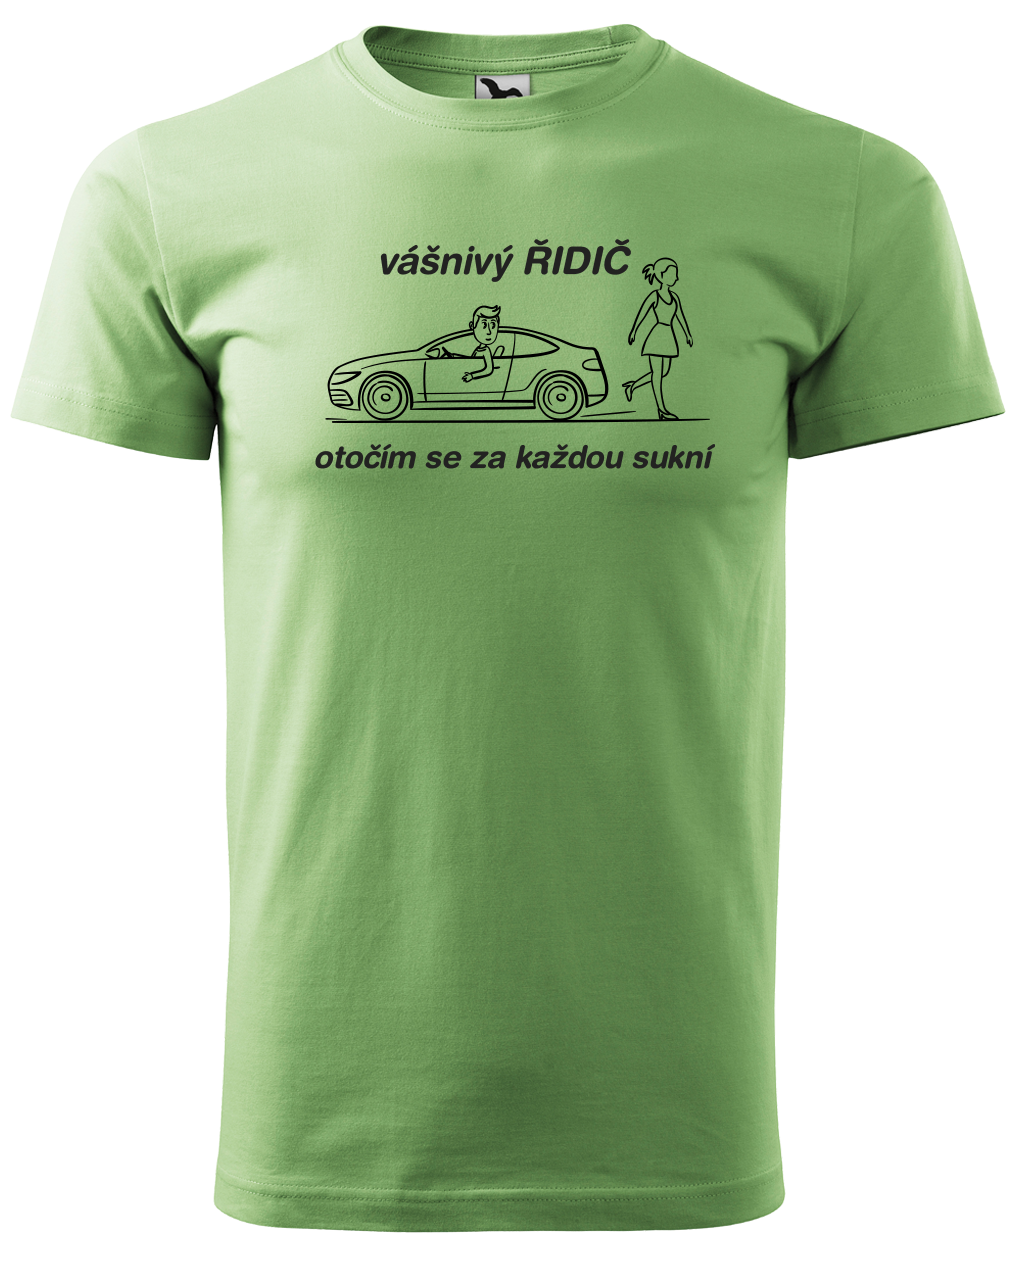 Vtipné tričko pro řidiče - Vášnivý řidič Velikost: M